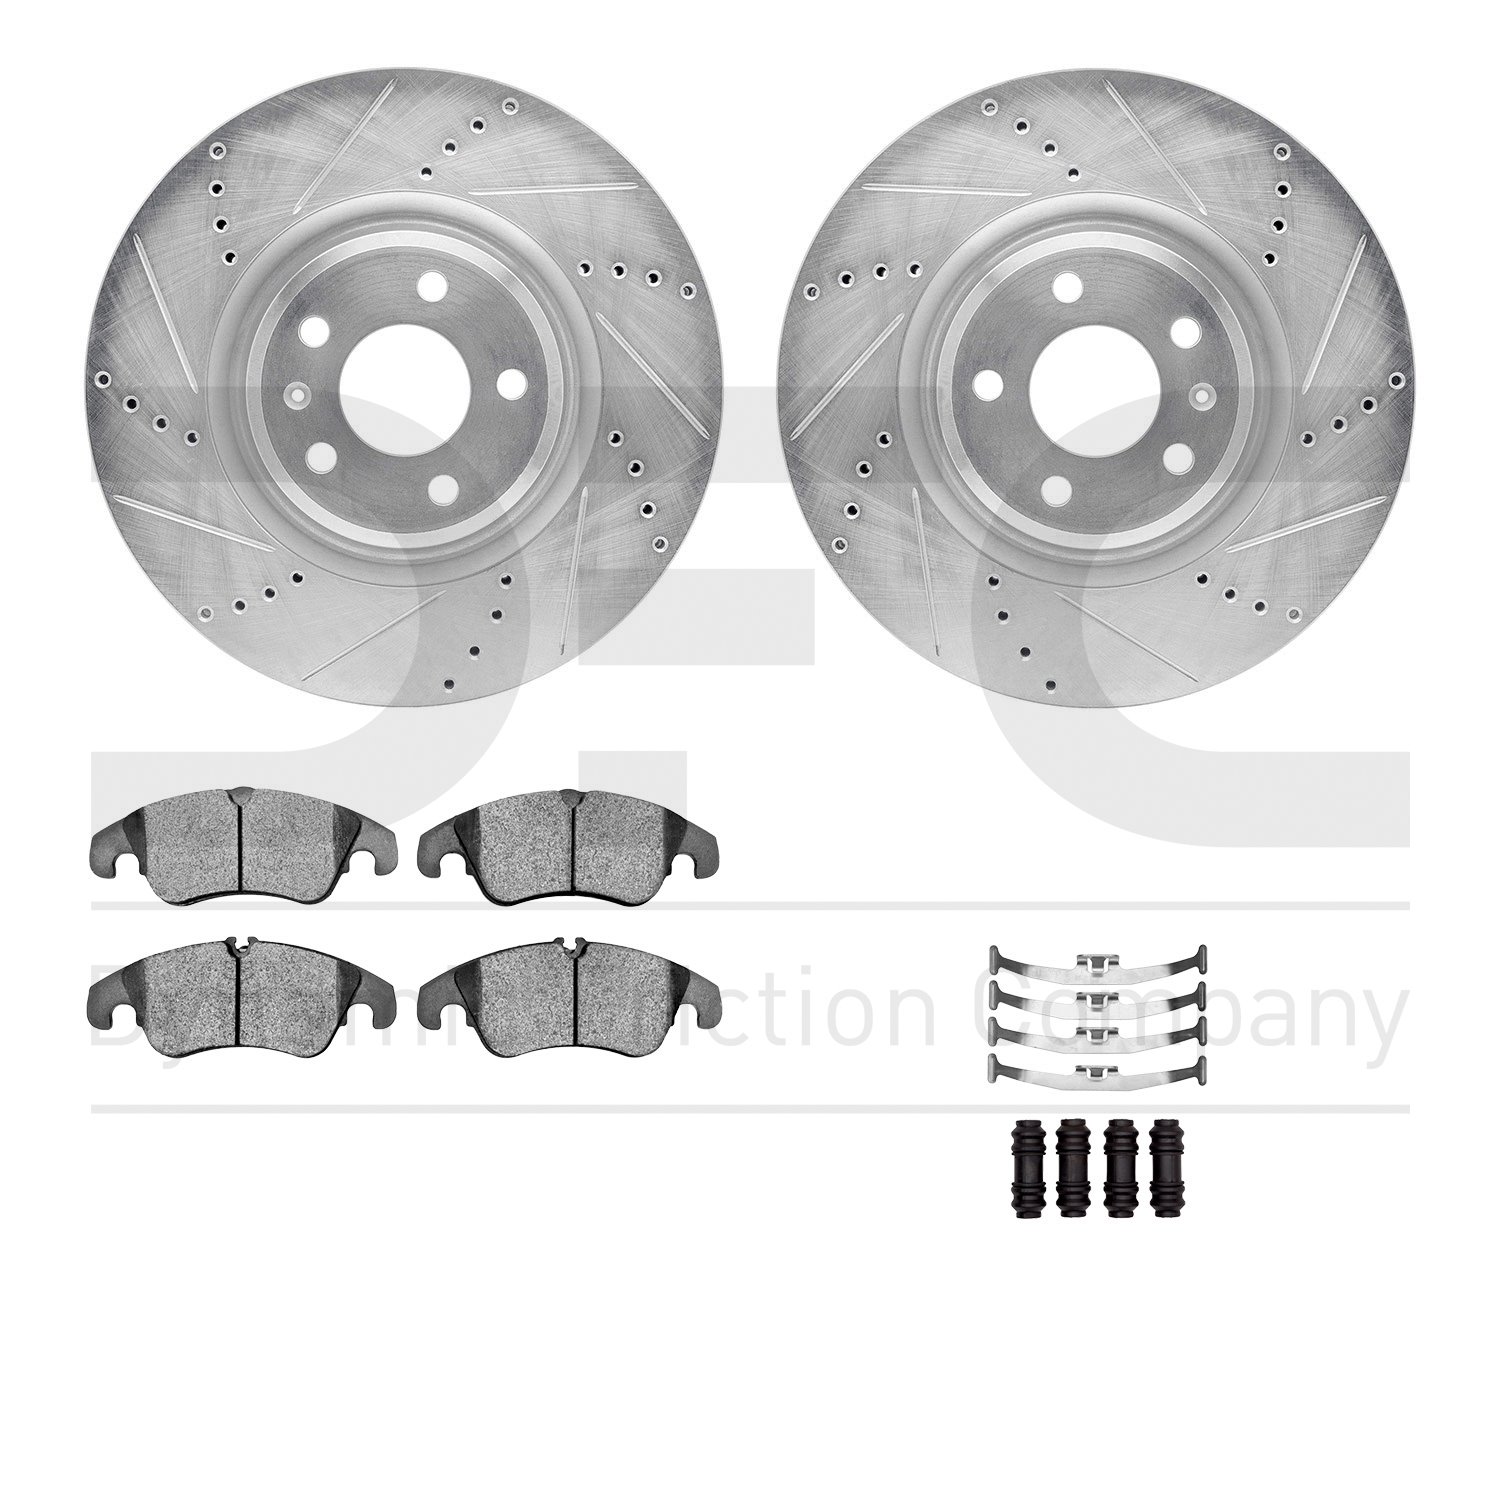 7612-73058 Drilled/Slotted Brake Rotors w/5000 Euro Ceramic Brake Pads Kit & Hardware [Silver], 2012-2017 Audi/Volkswagen, Posit